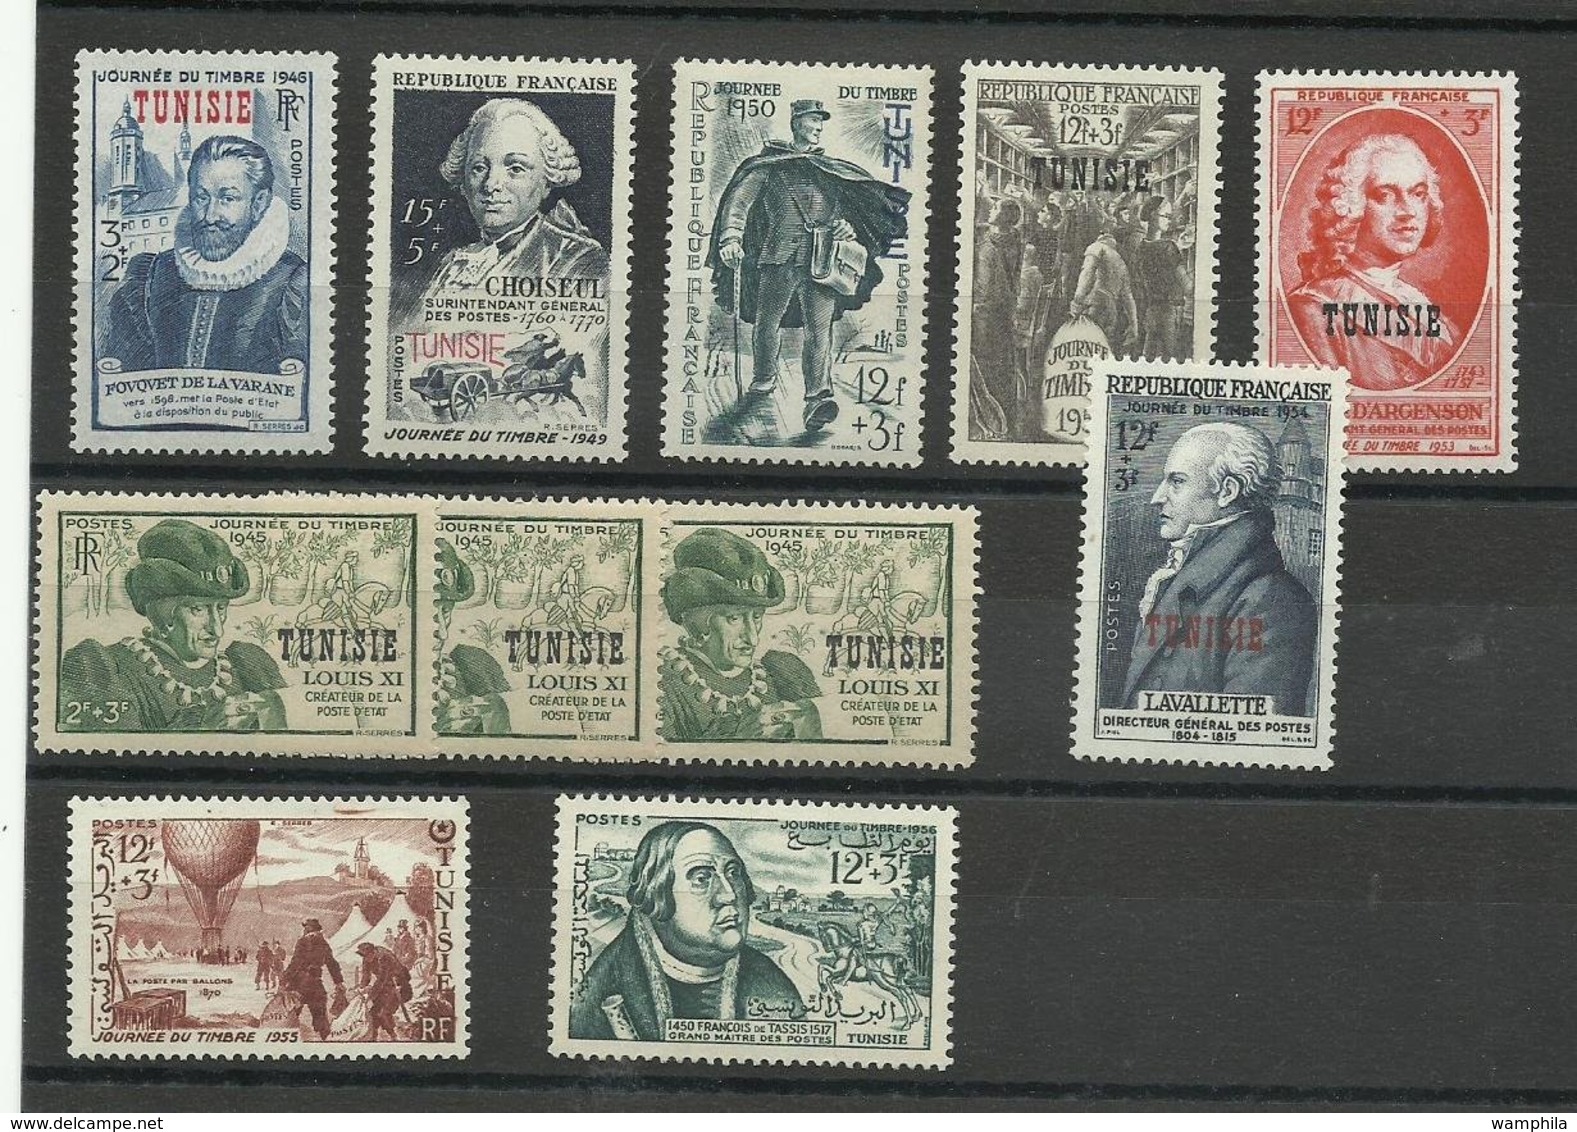 Tunisie, un lot de timbres neufs**/ */ Oblitérés (9 scanns)